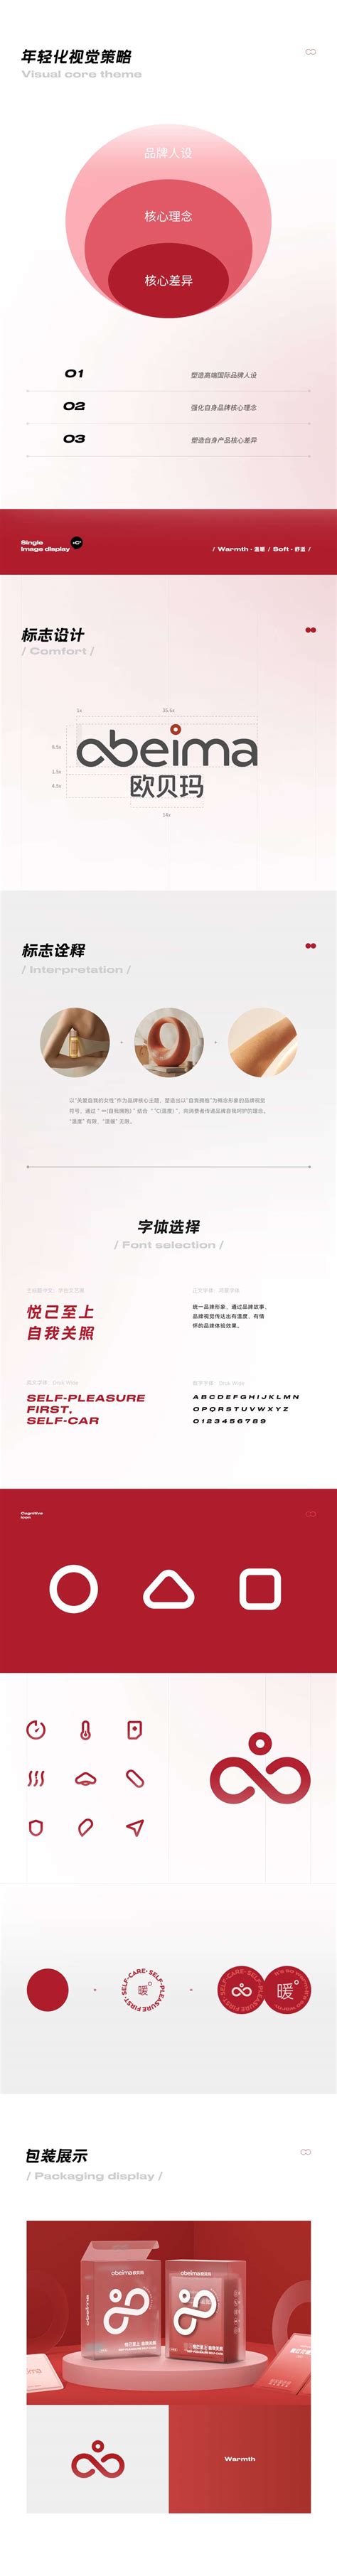 杭州品牌设计公司-欧贝玛暖贴品牌视觉升级全案 西九里颜究社